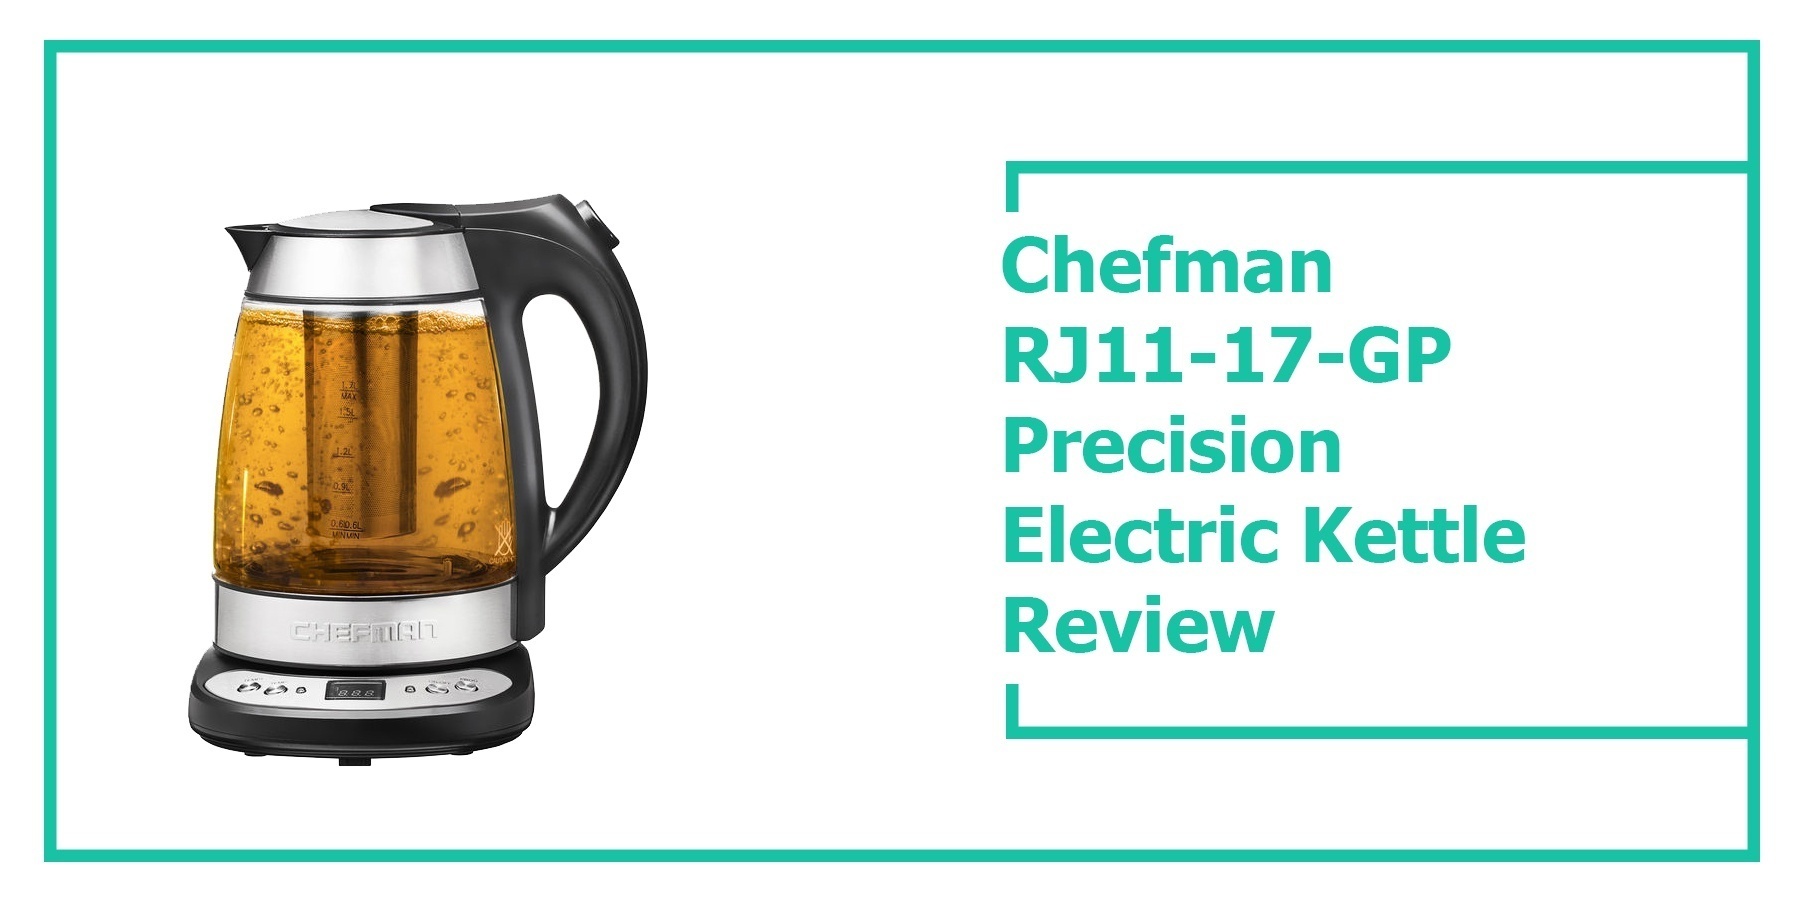 Chefman RJ11-17-GP Precision Electric Kettle Review